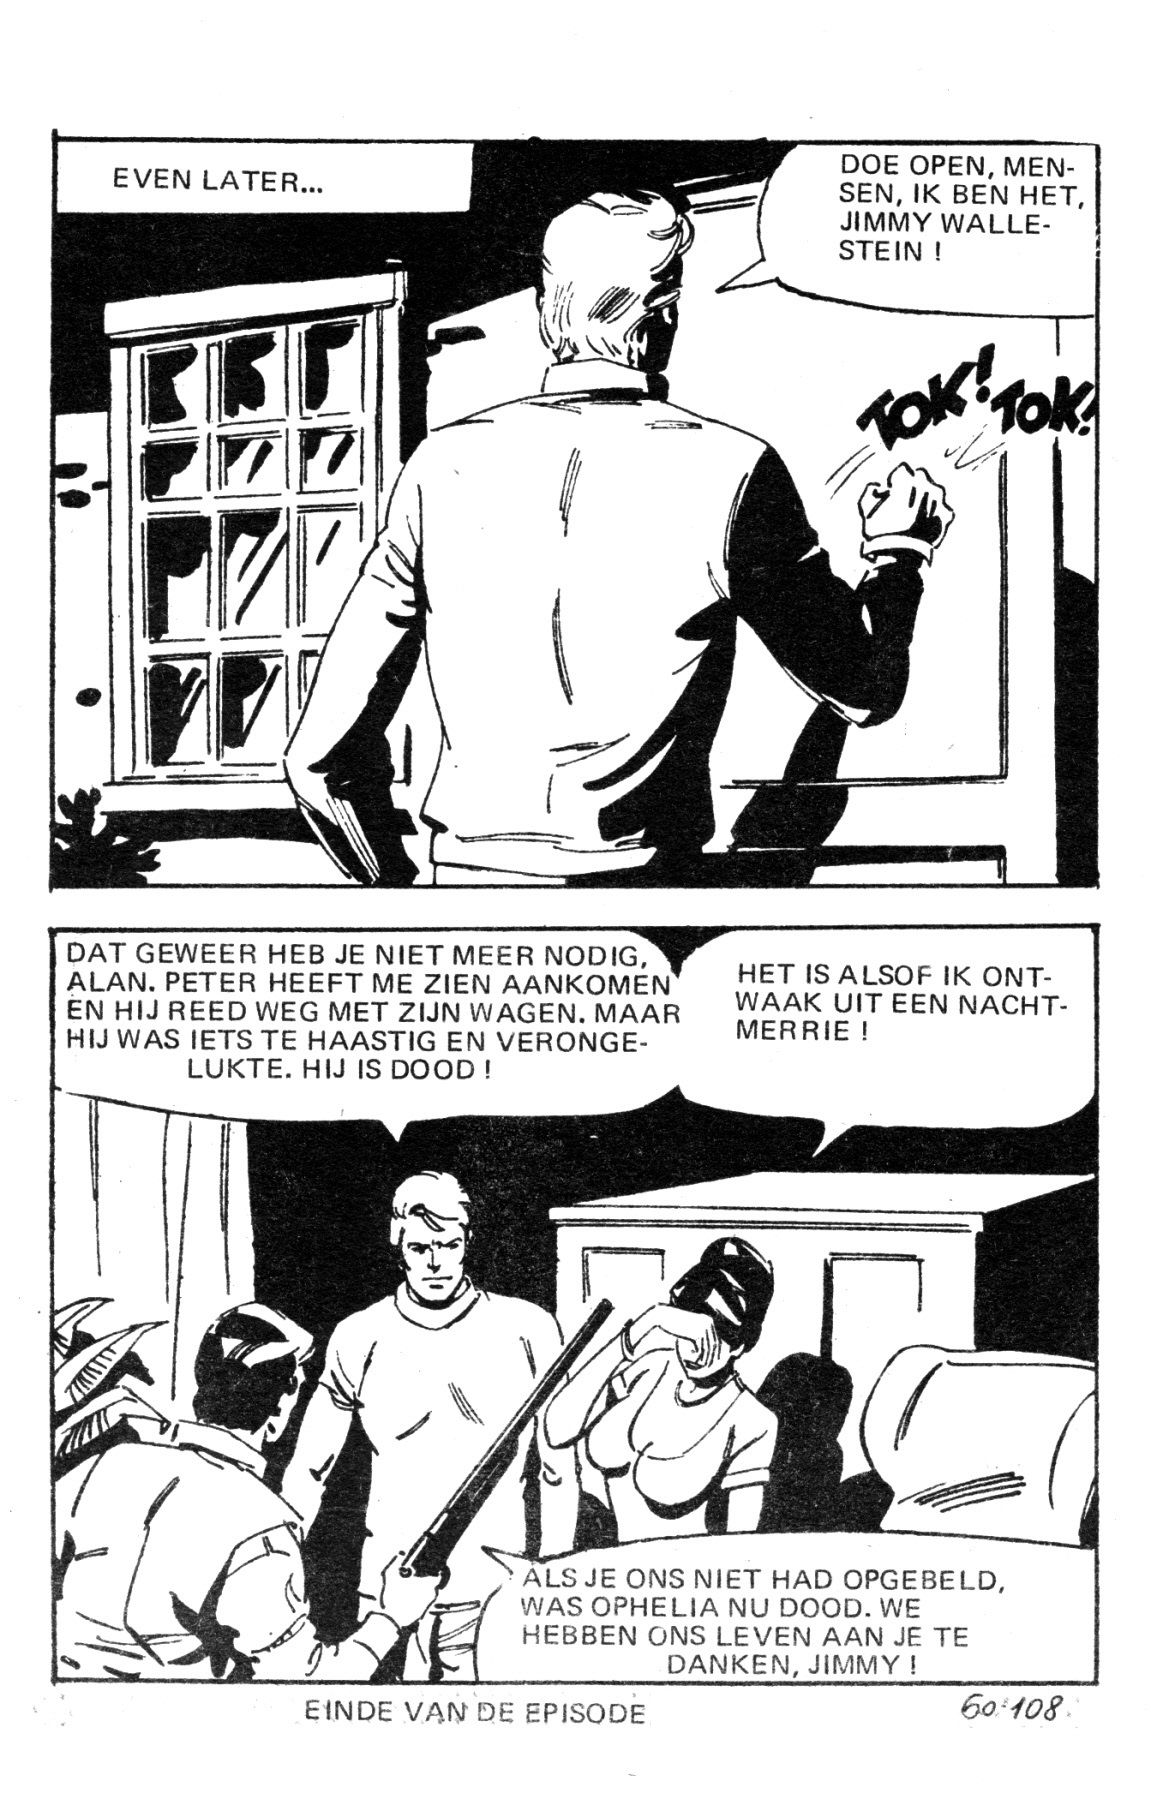 Wallestein Het Monster - 051 - Het Derde Slachtoffer (Dutch) In 9 series...meer dan 90 strips uit de "Wallestein" serie! 111